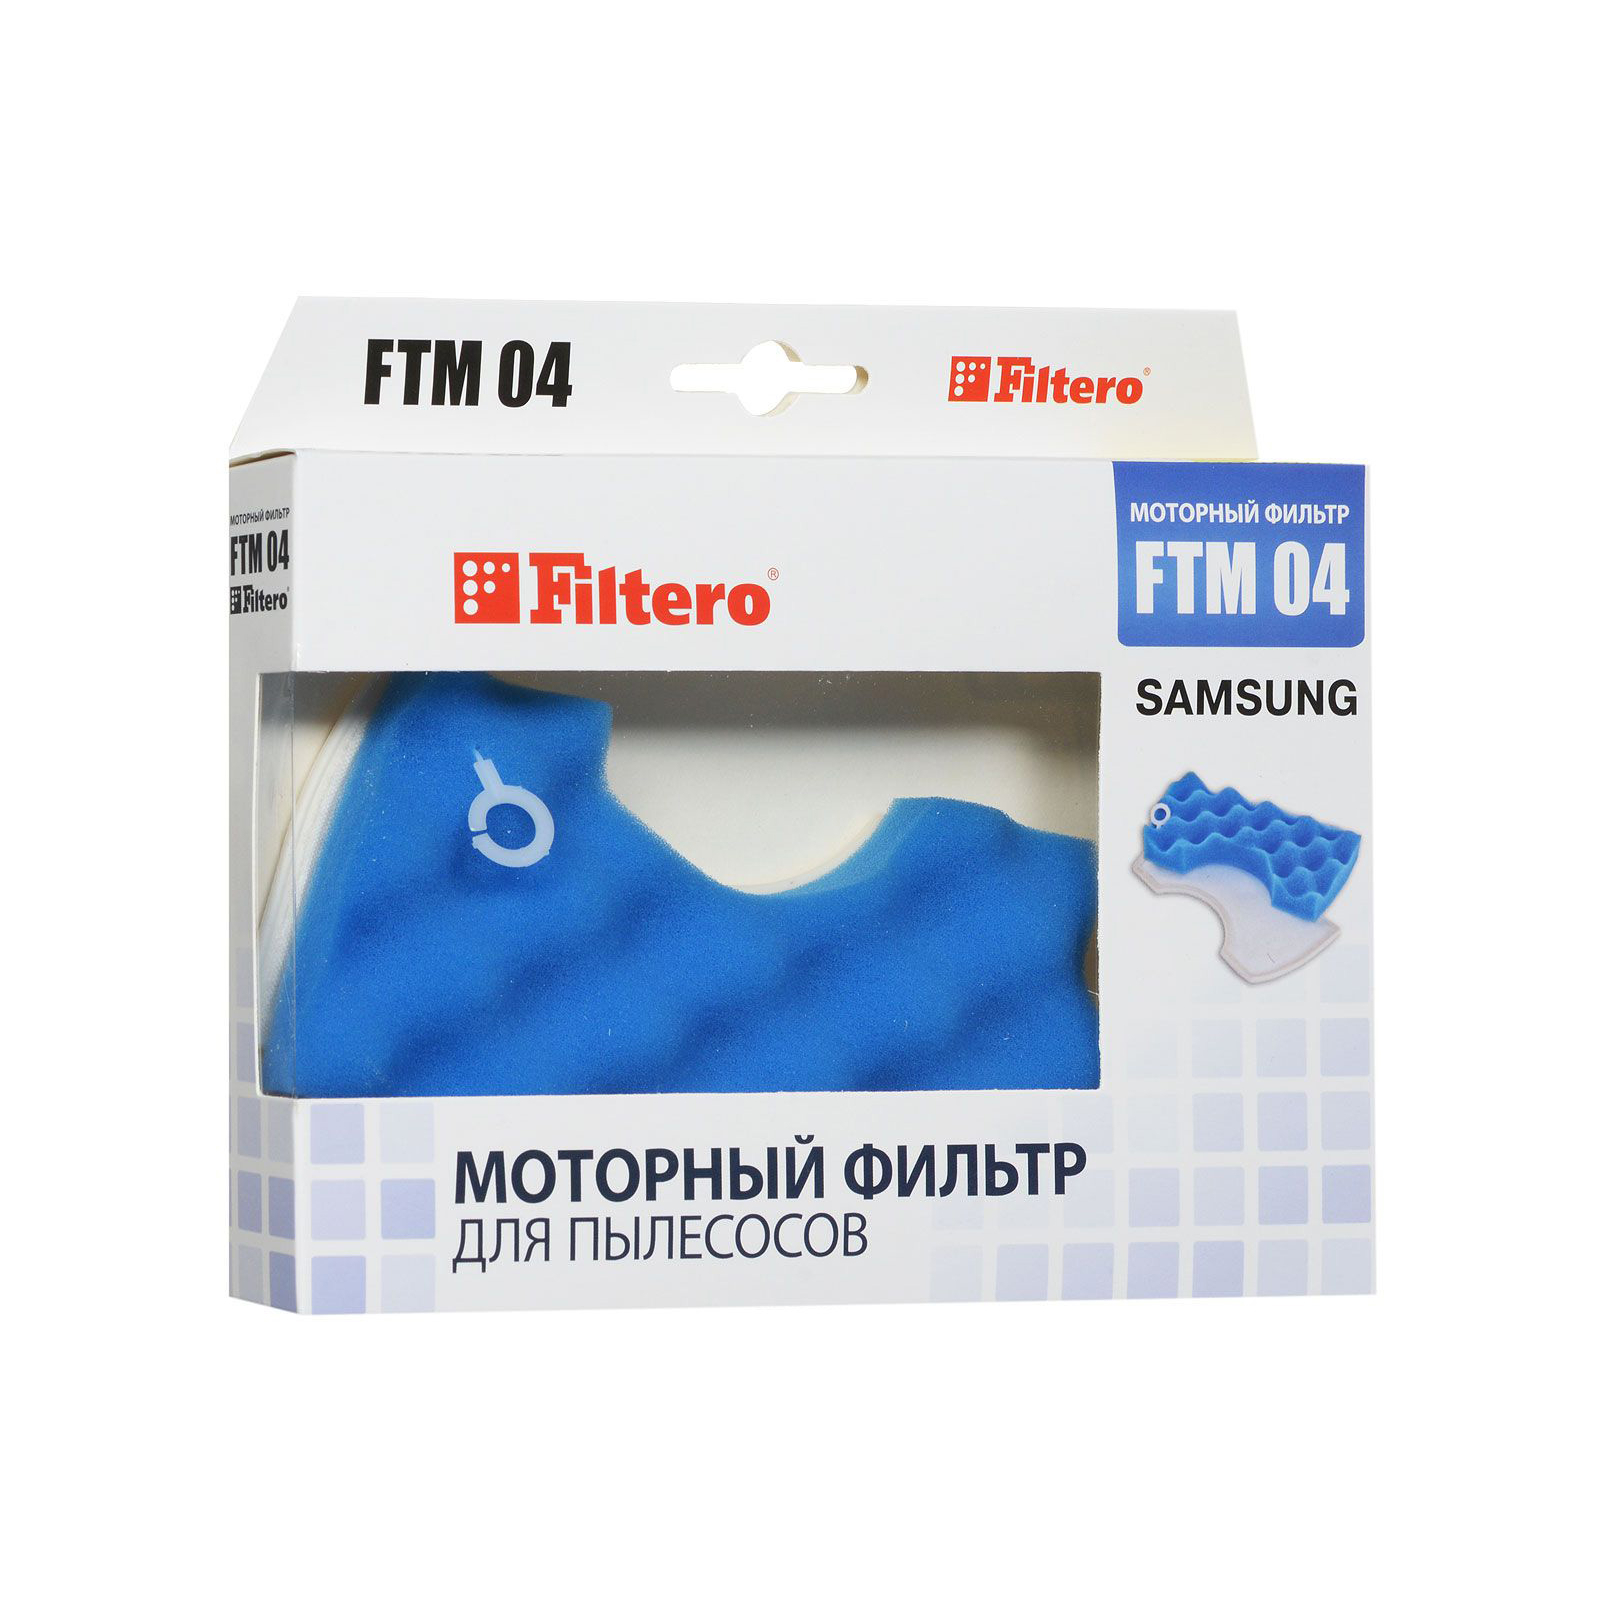 Фильтр для пылесоса Filtero FTM 04